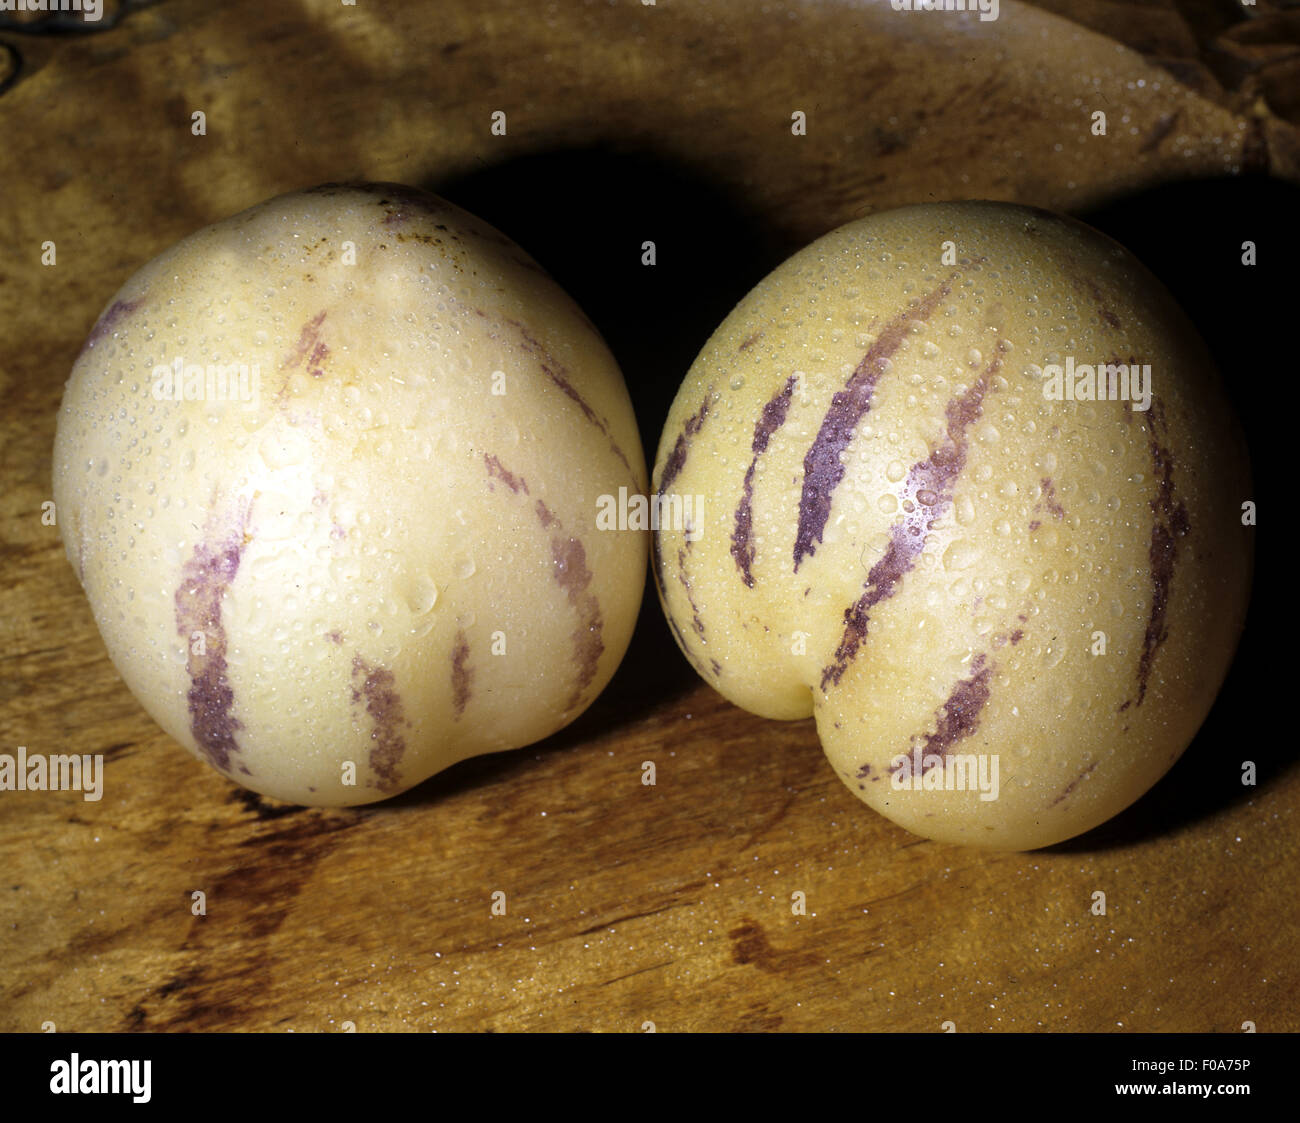 Melonenbirne, Pepino, Suedfrucht, Stock Photo